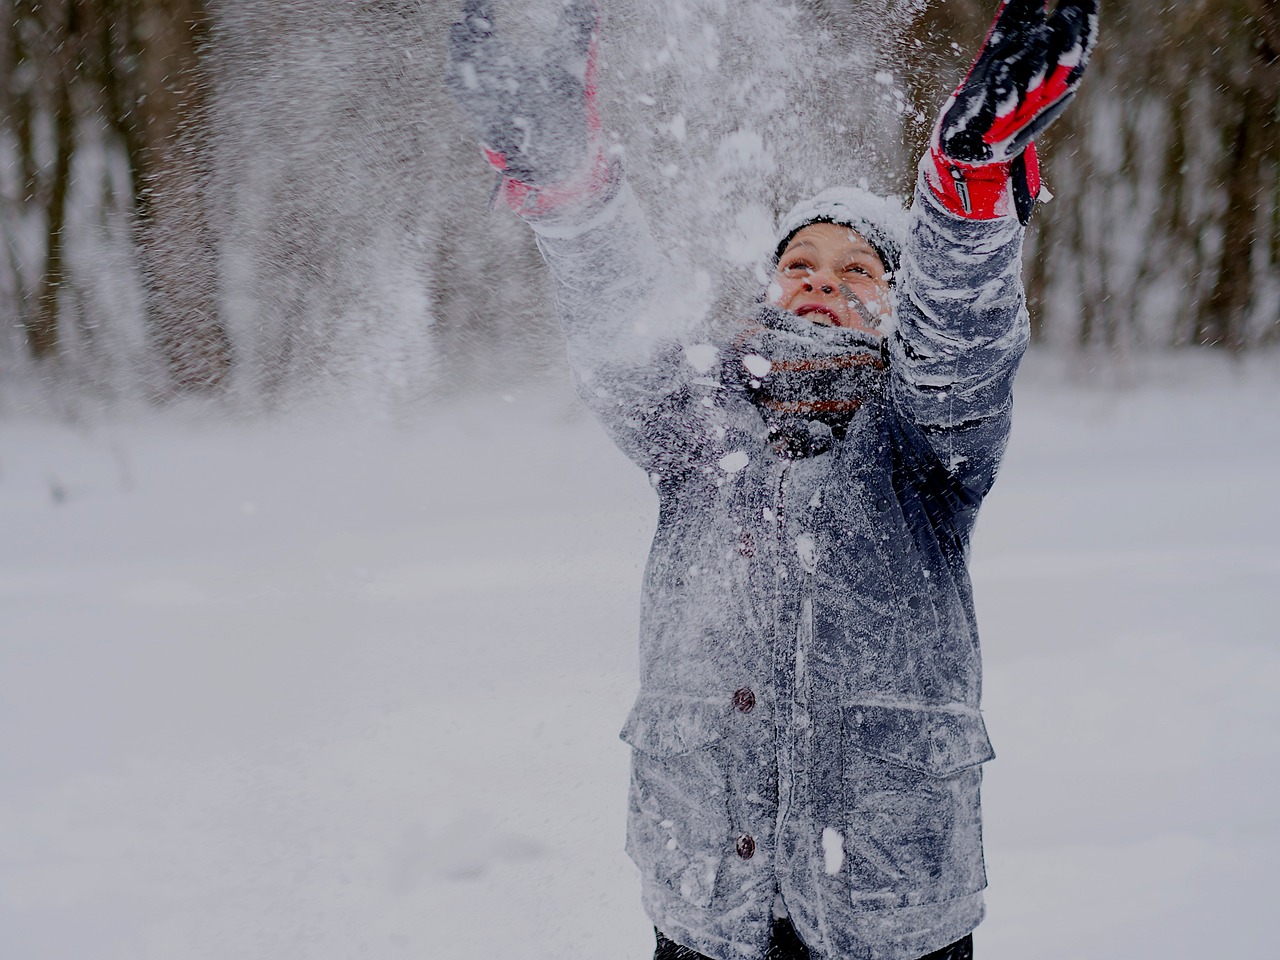 Dziecko ciepło ubrane w śnieżny dzień rzucające w górę śnieg. Image by Amr from Pixabay